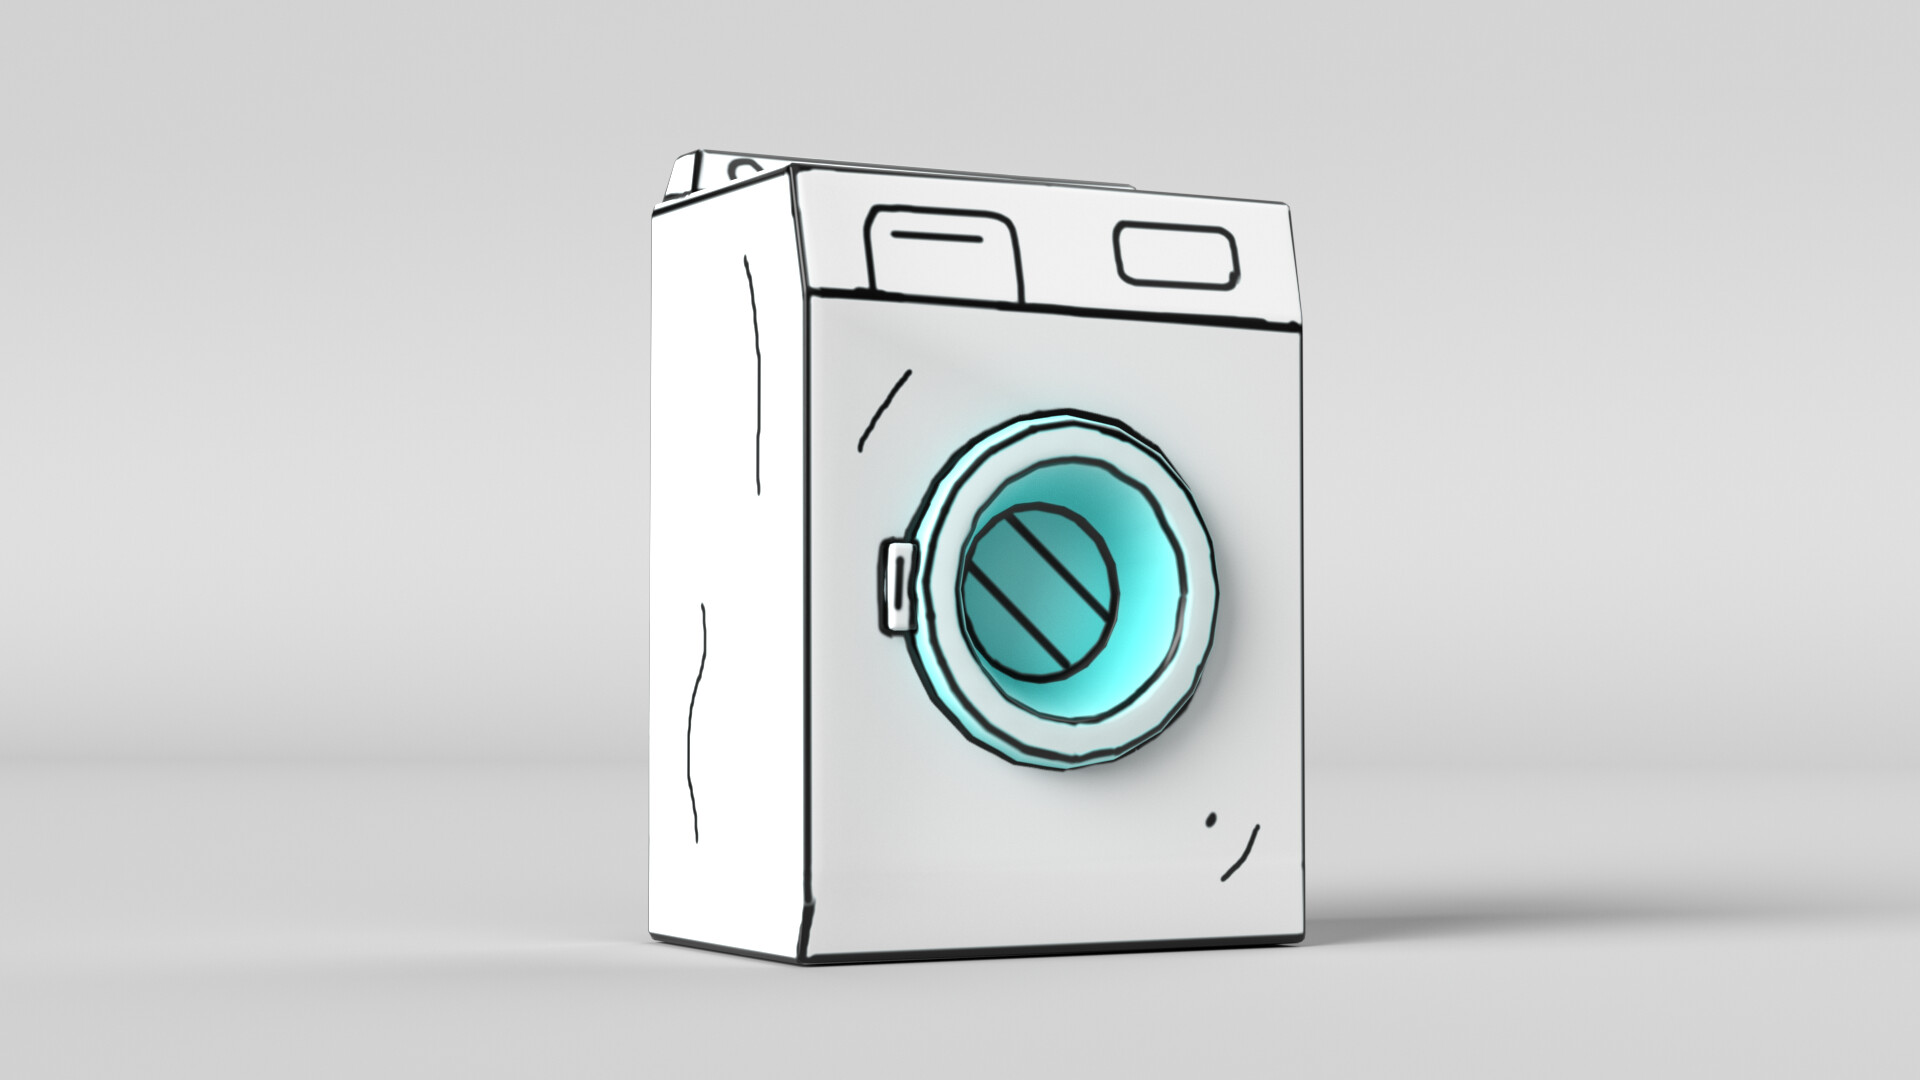 ArtStation - Washing Machine Cartoon